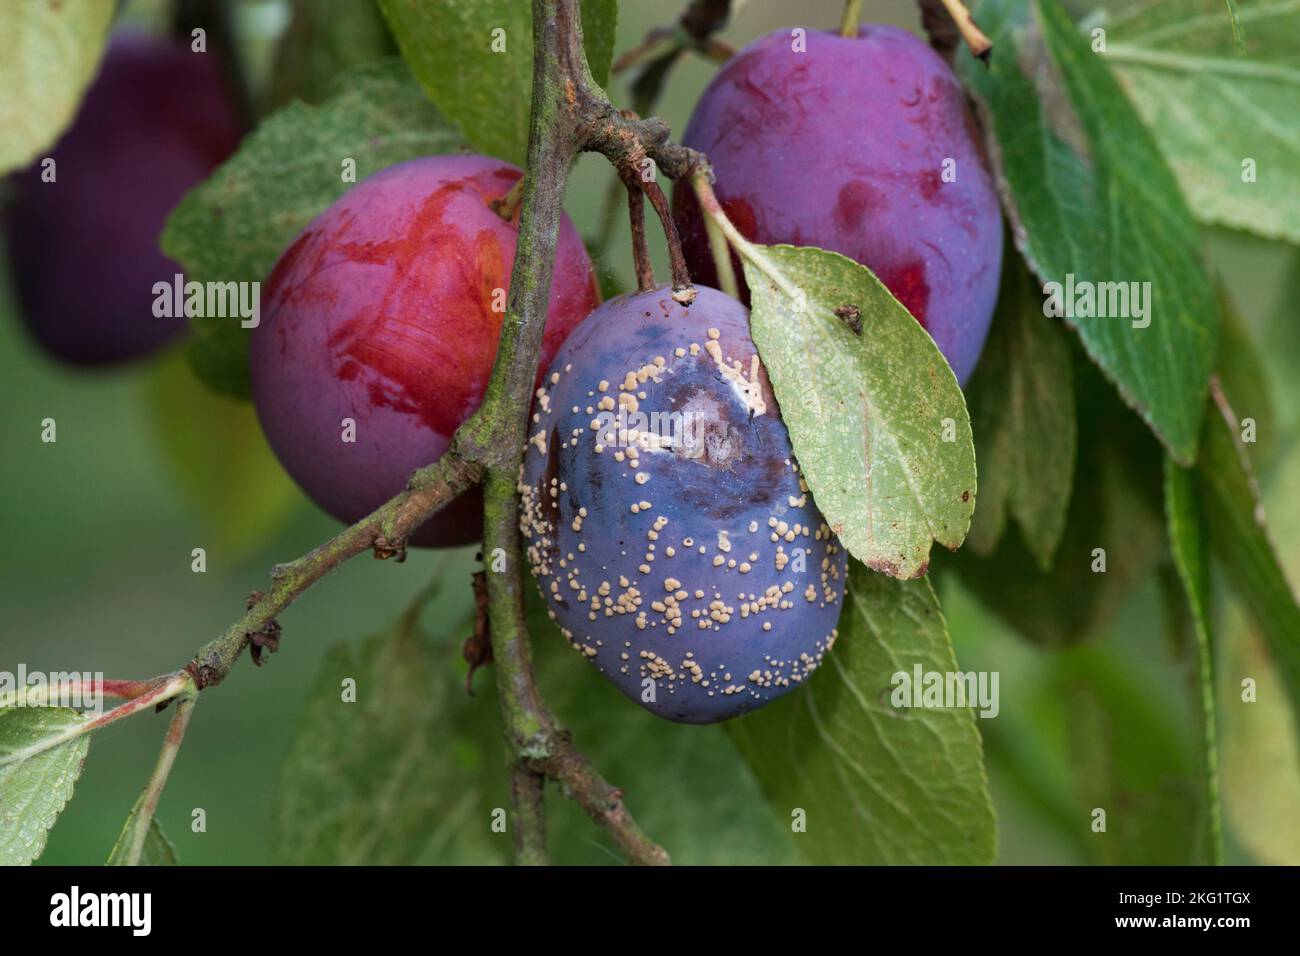 Pudrición parda (Monilinia laxa) sustulas que se forman en la fruta de ciruela de Victoria púrpura madura secundaria dañada en el árbol, Berkshire, agosto Foto de stock